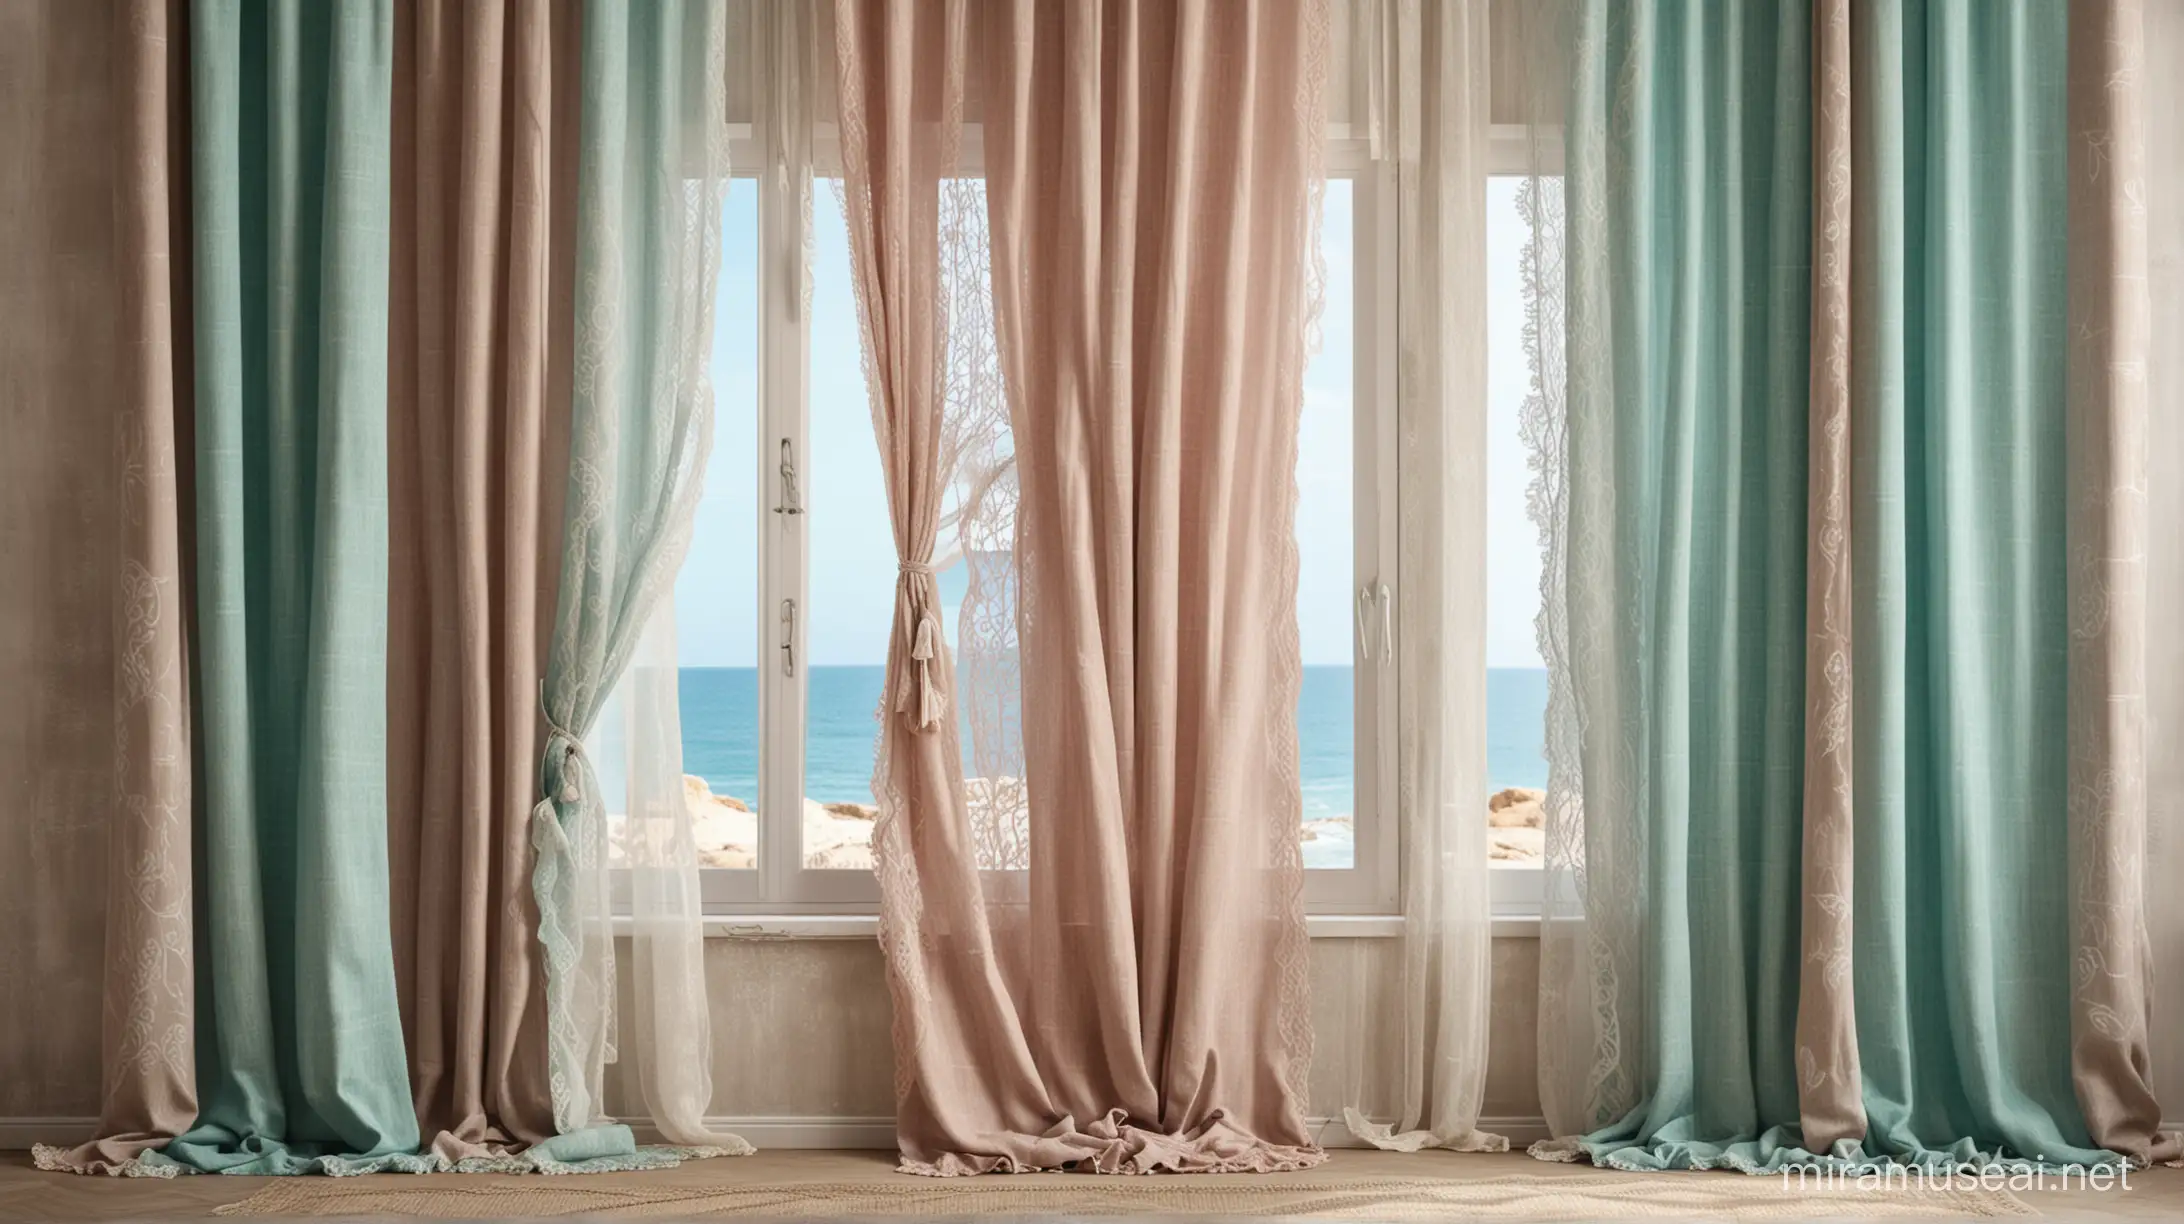  fondo ventana con cortinas rusticas con encaje , tonos arena malva y turquesa